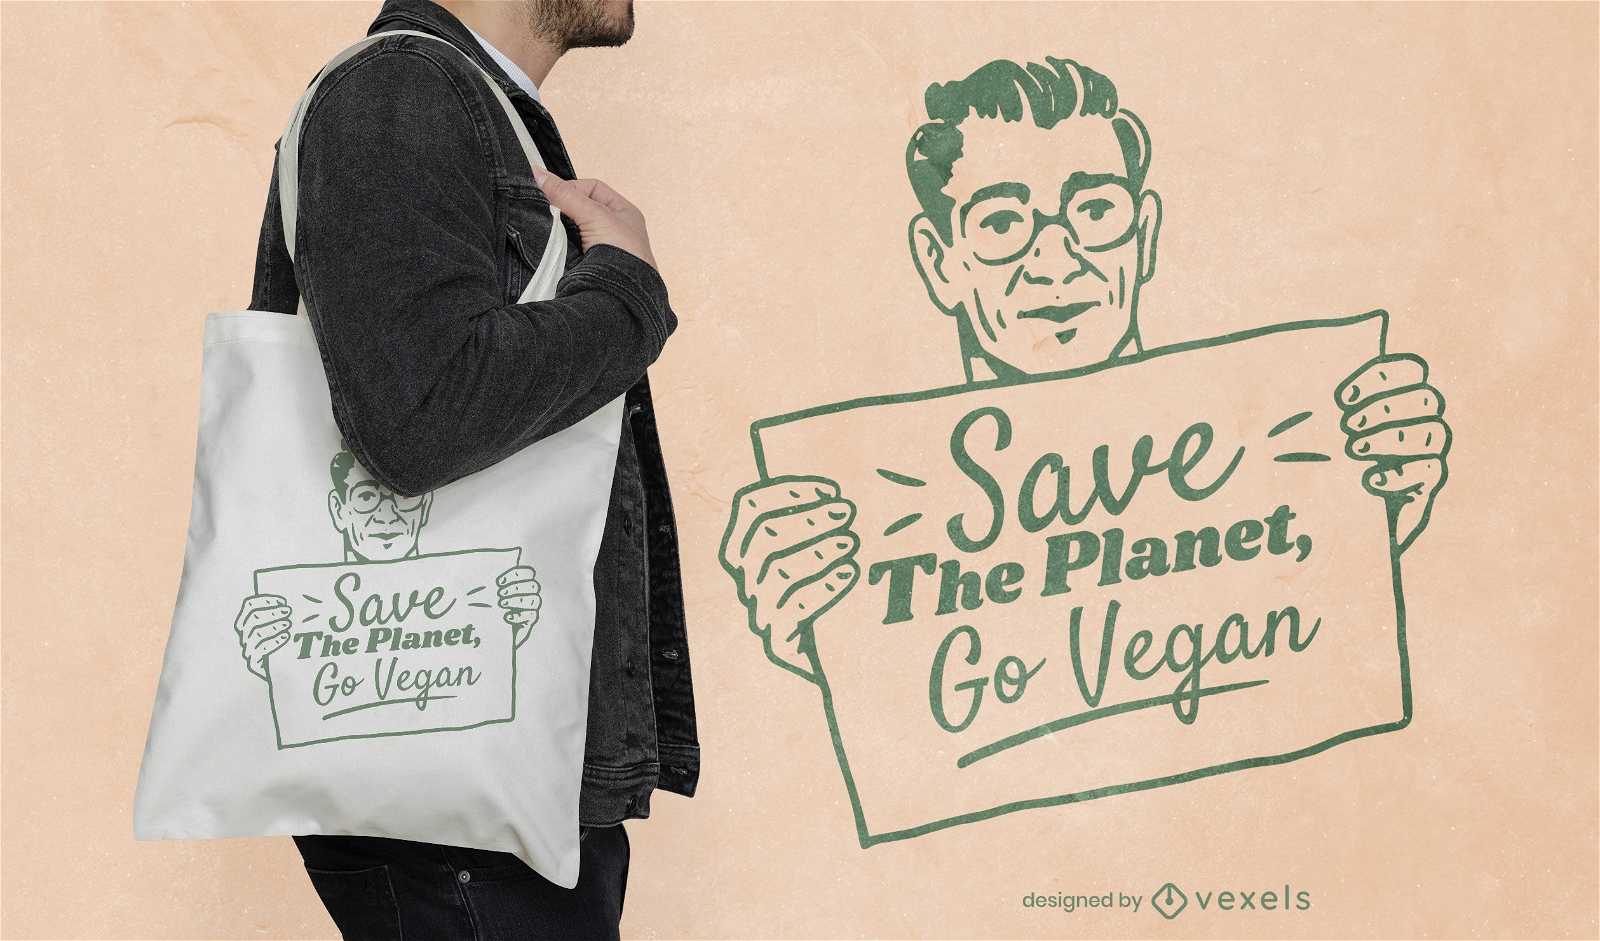 Go design de sacola ecol?gica vegana